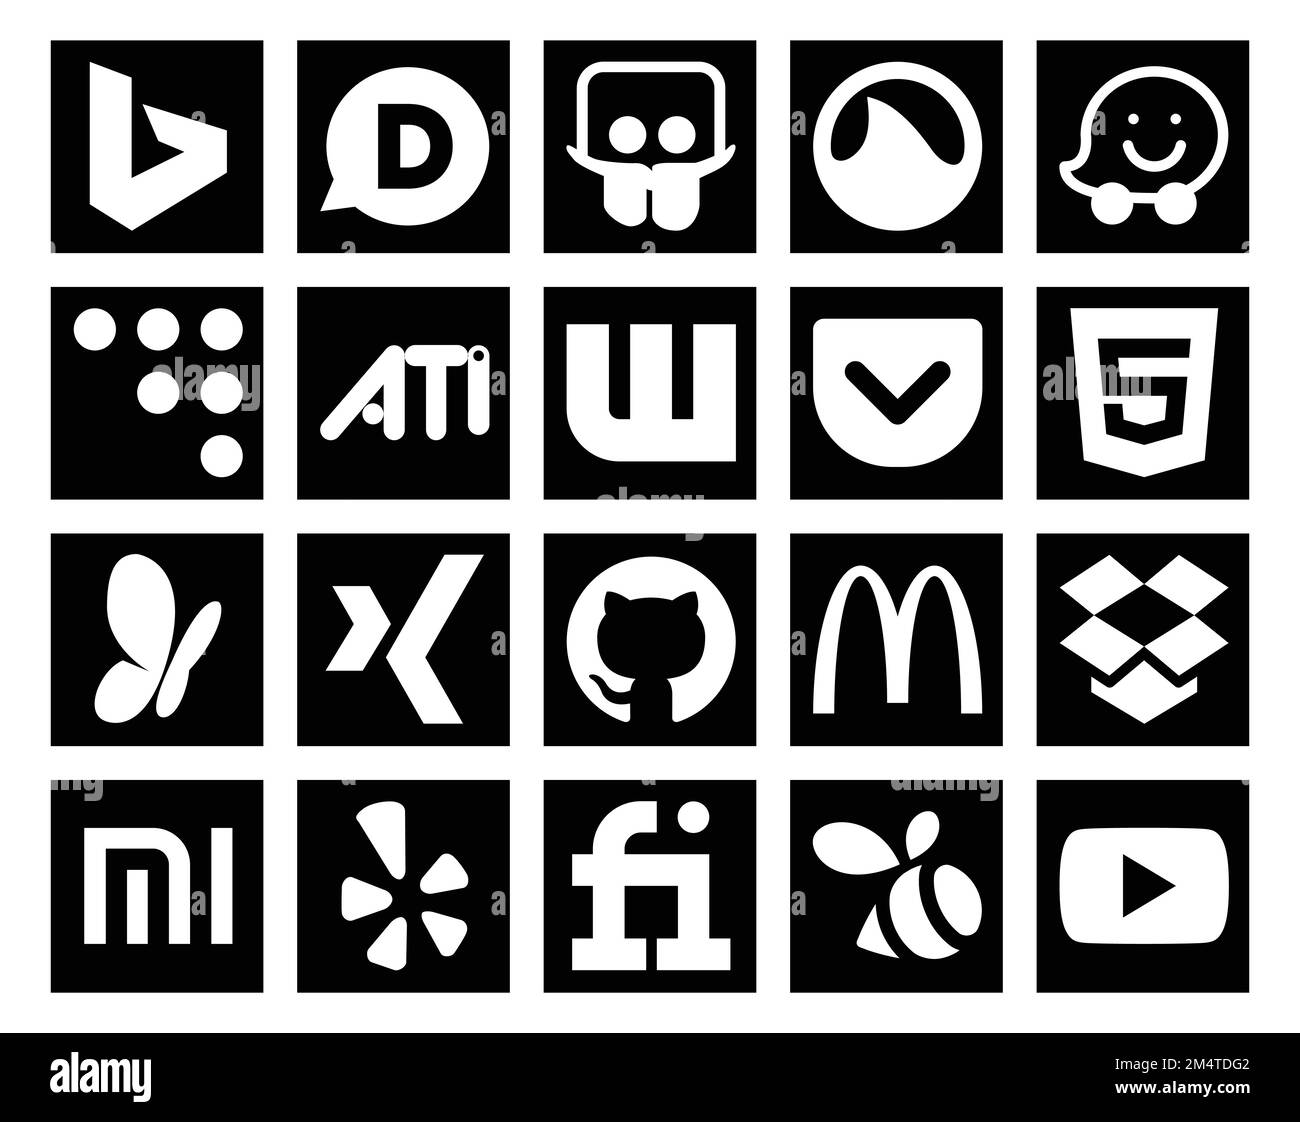 20 Icon Pack für soziale Medien einschließlich Fiverr. xiaomi. Tasche. dropbox. github Stock Vektor